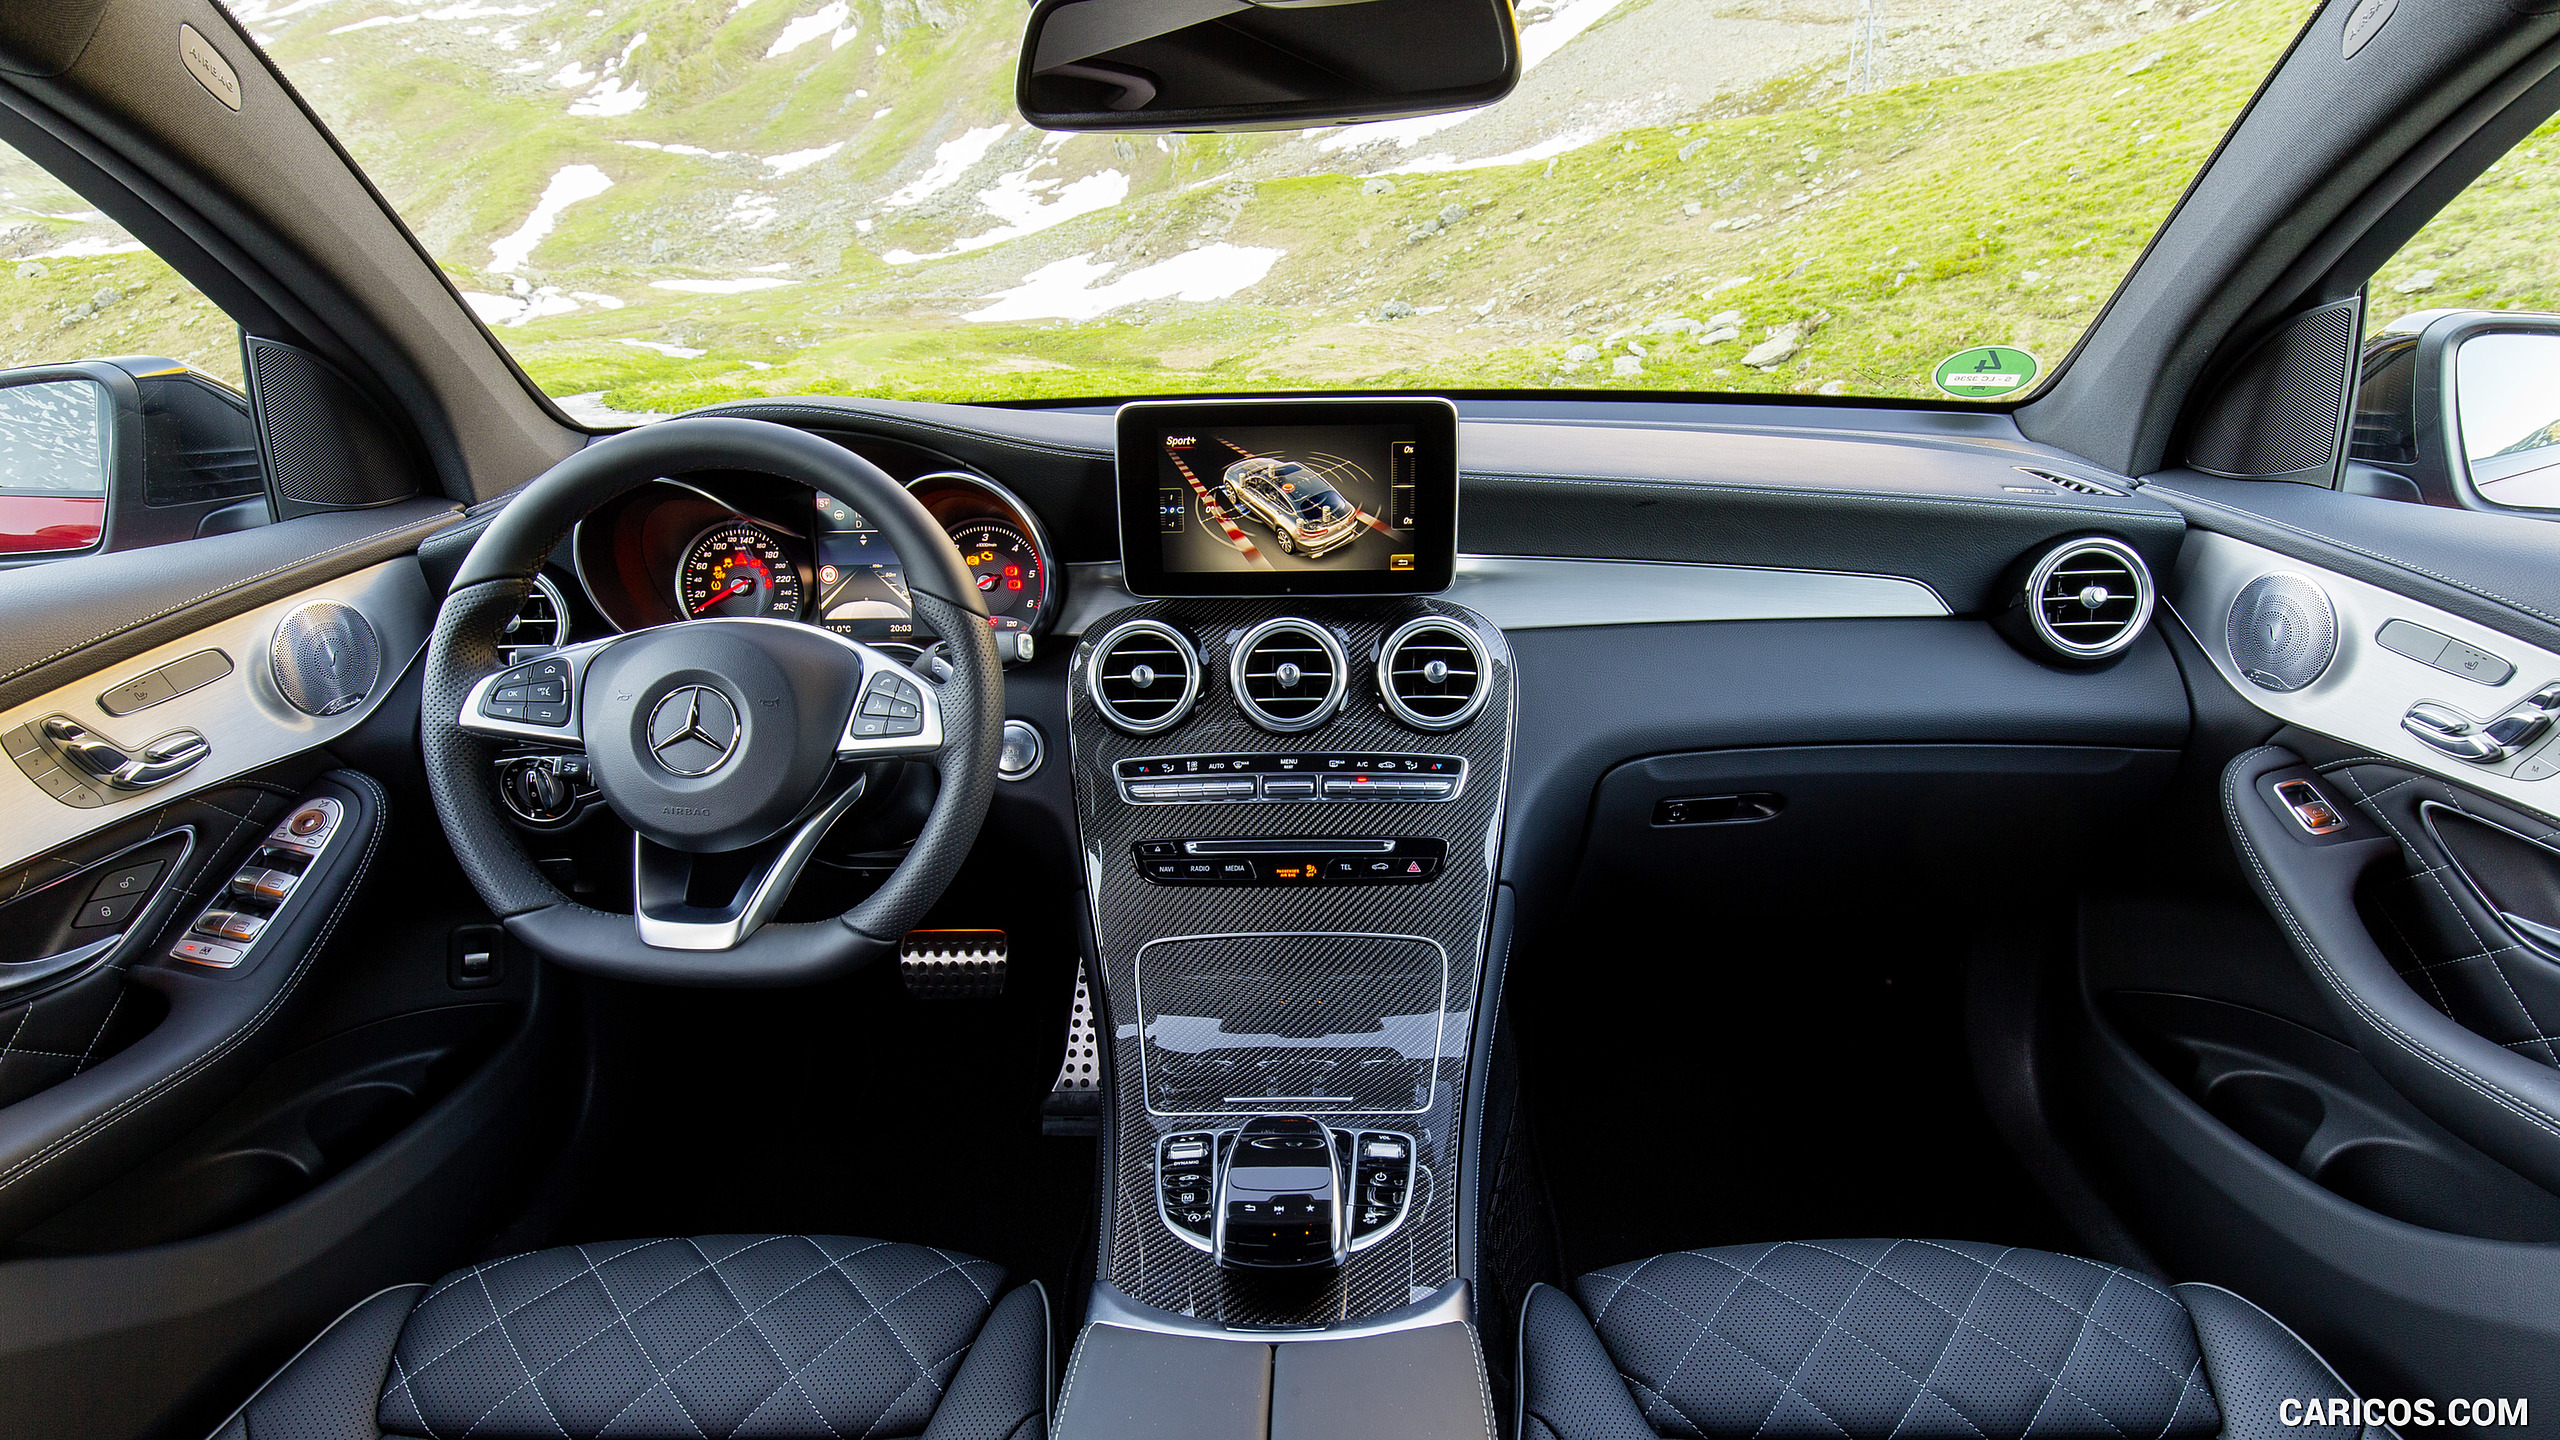 2017 Mercedes-Benz GLC 350 d Coupe - Designo Black Nappa Leather Interior, Cockpit, #81 of 144